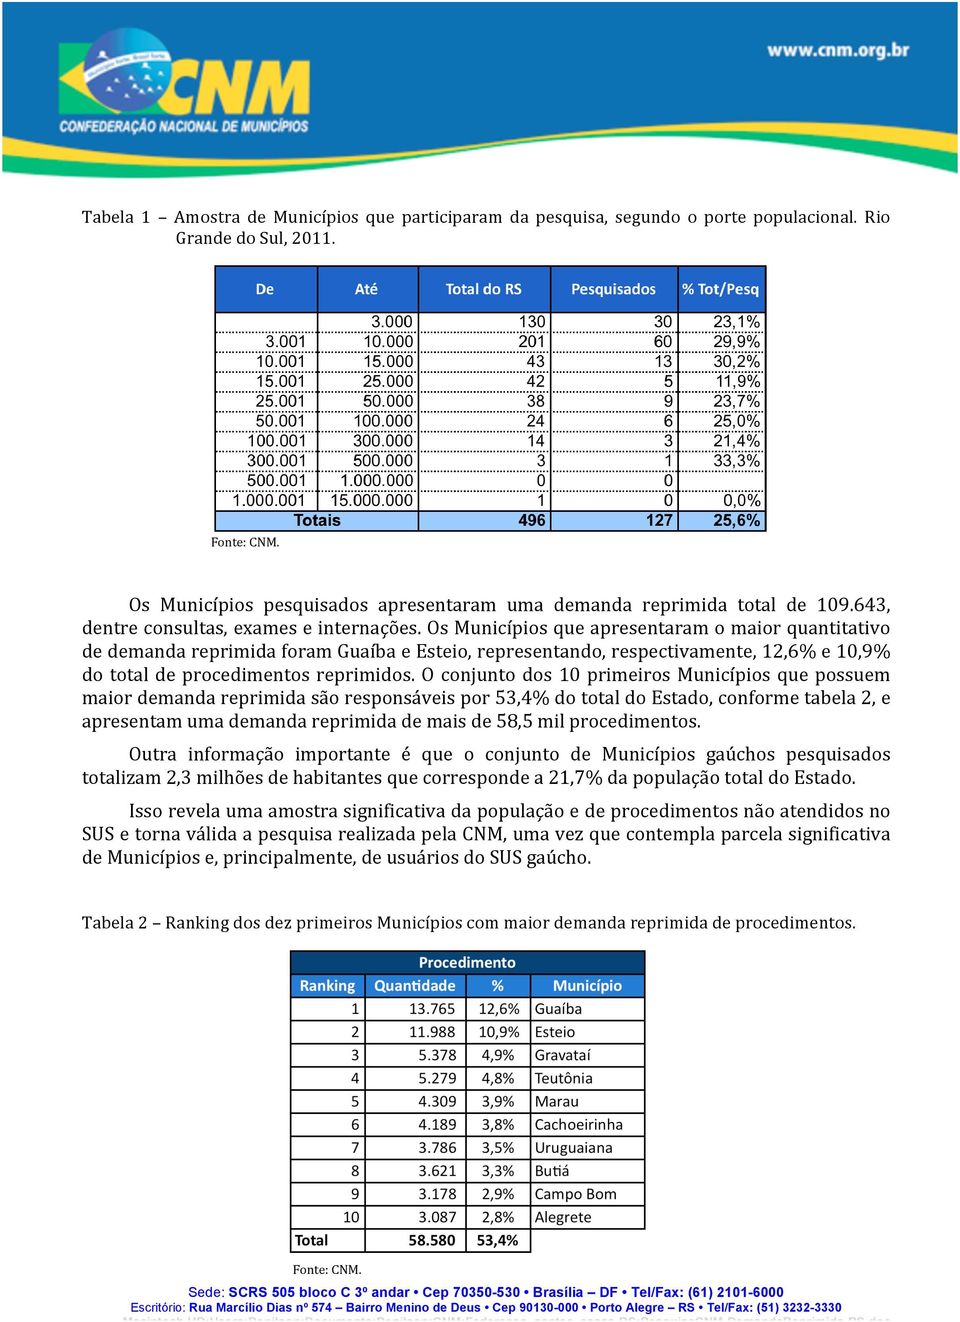 Os Municípios que apresentaram o maior quantitativo de demanda reprimida foram Guaíba e Esteio, representando, respectivamente, 12,6% e 10,9% do total de procedimentos reprimidos.